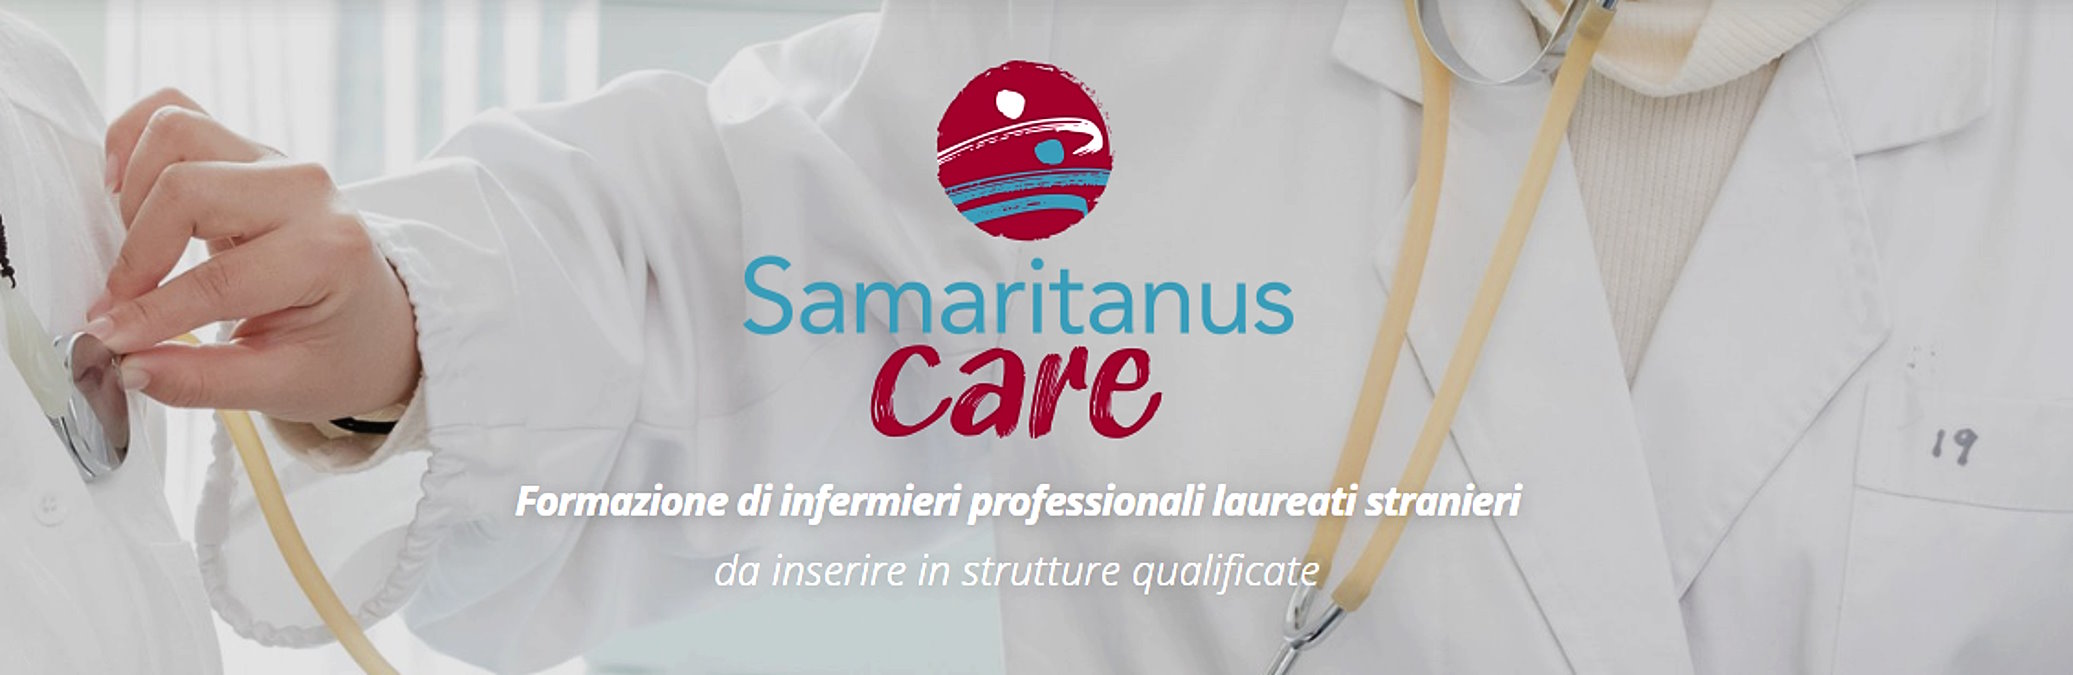 Samaritanus Care: il progetto della CEI per far fronte alla enorme carenza di personale infermieristico dei prossimi anni